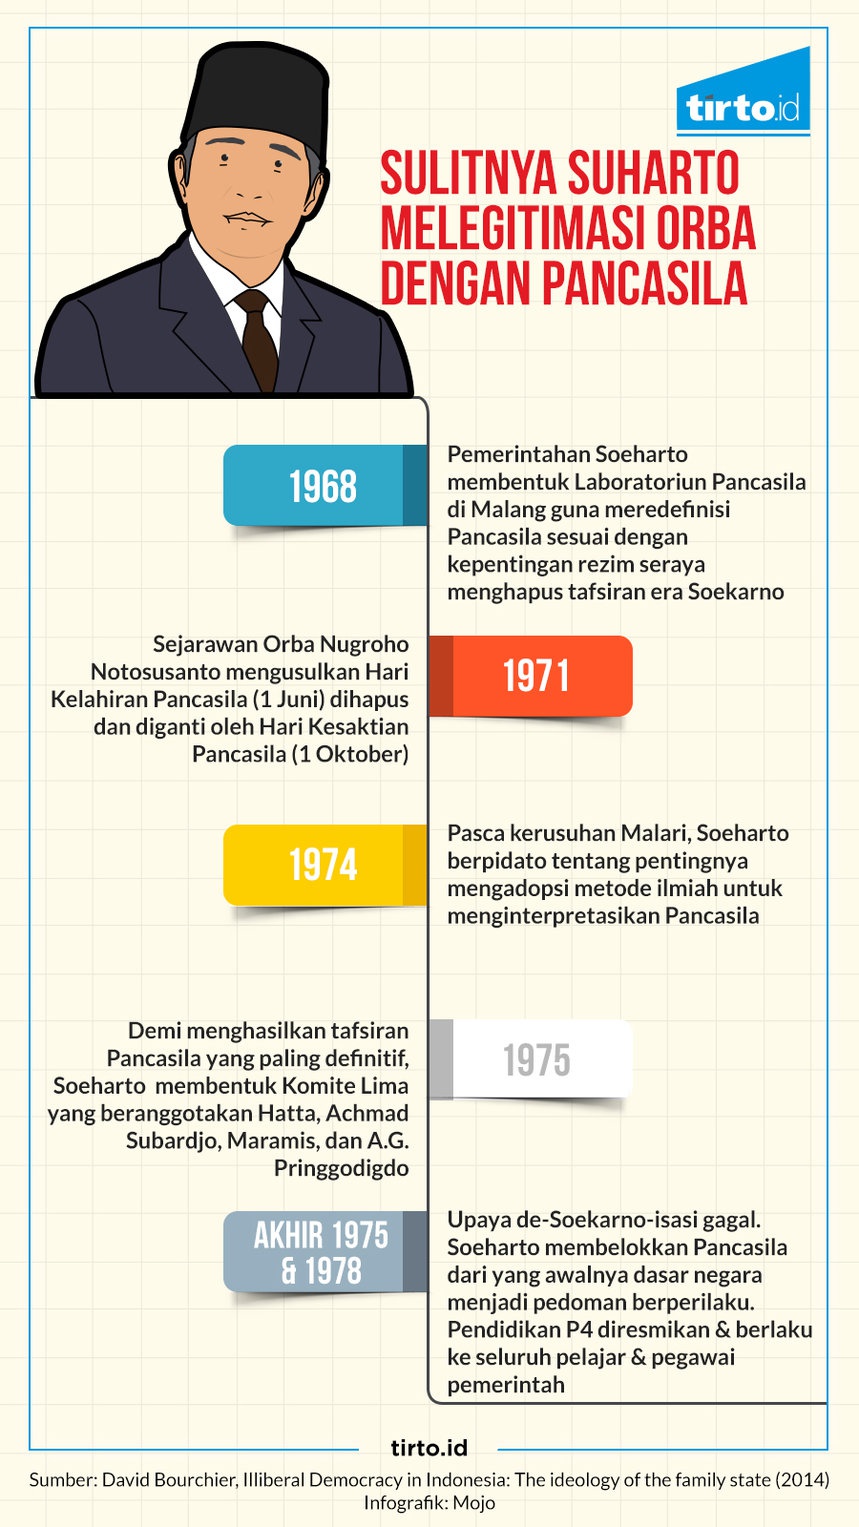 Upaya Soeharto Mengklaim Pancasila dari Sukarno